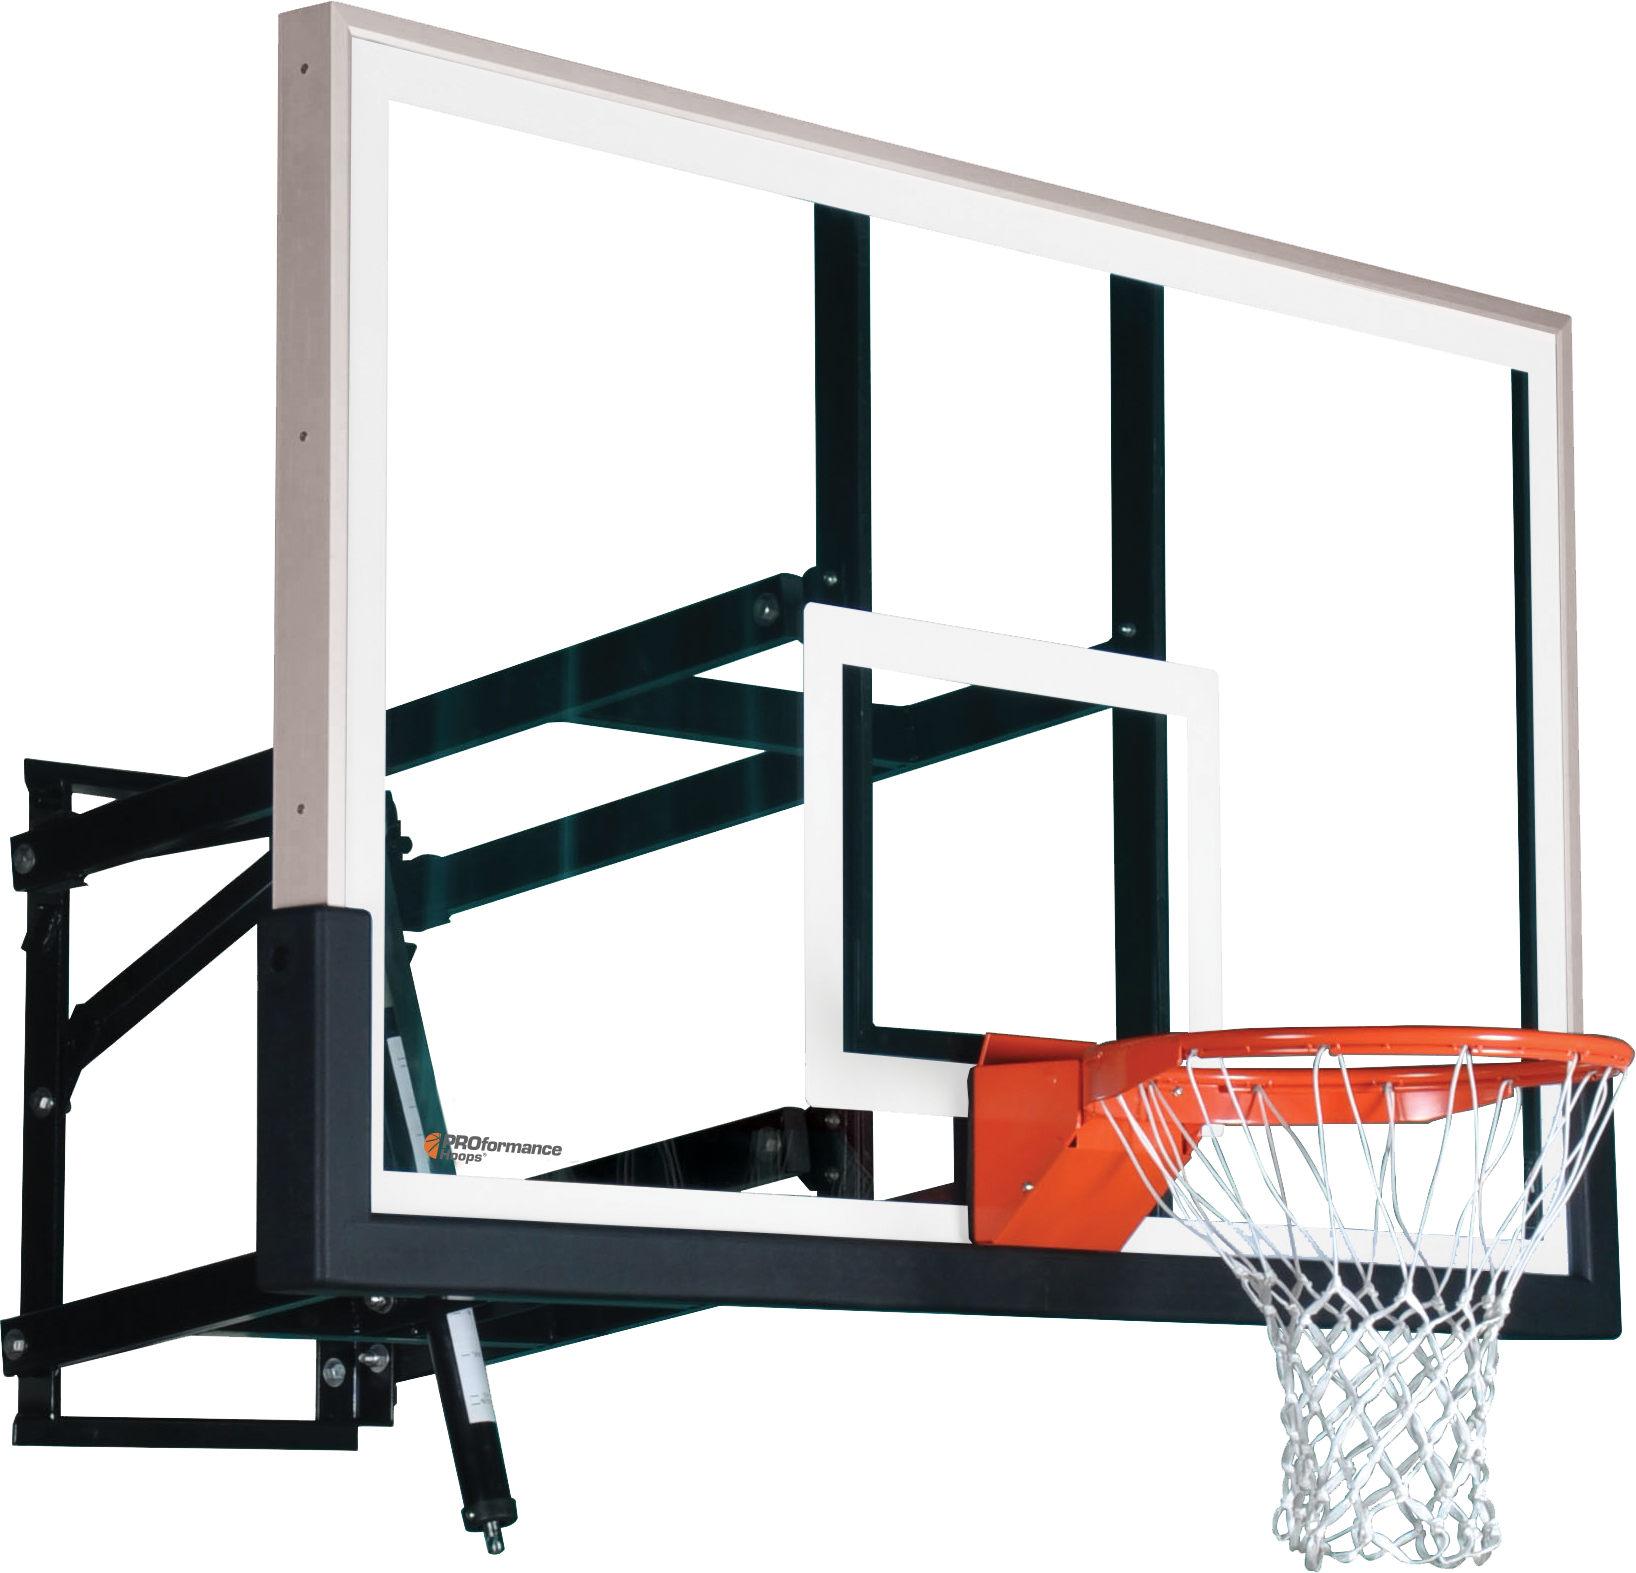 PROformance Wall Mount Basketball Hoop